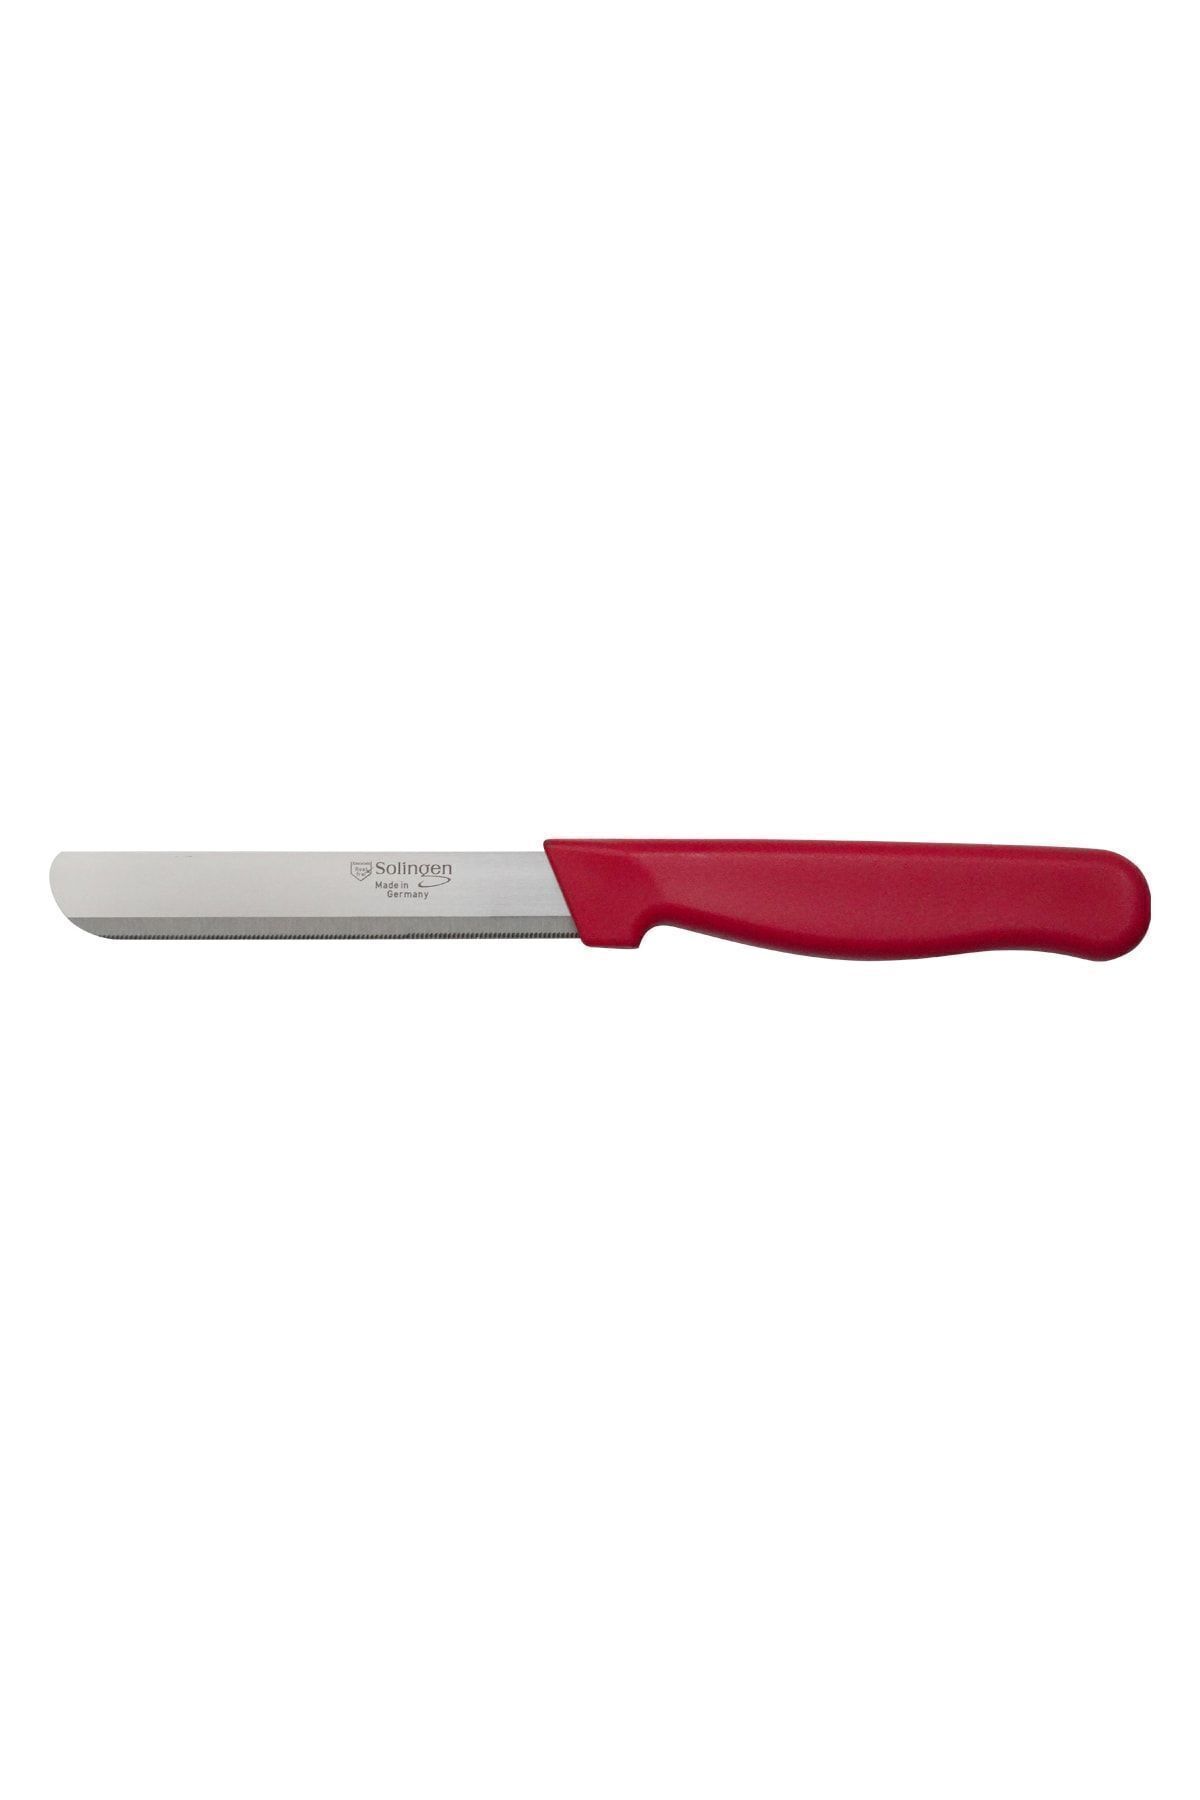 Solingen Micro Tırtıklı Doğrama Bıçağı Kırmızı